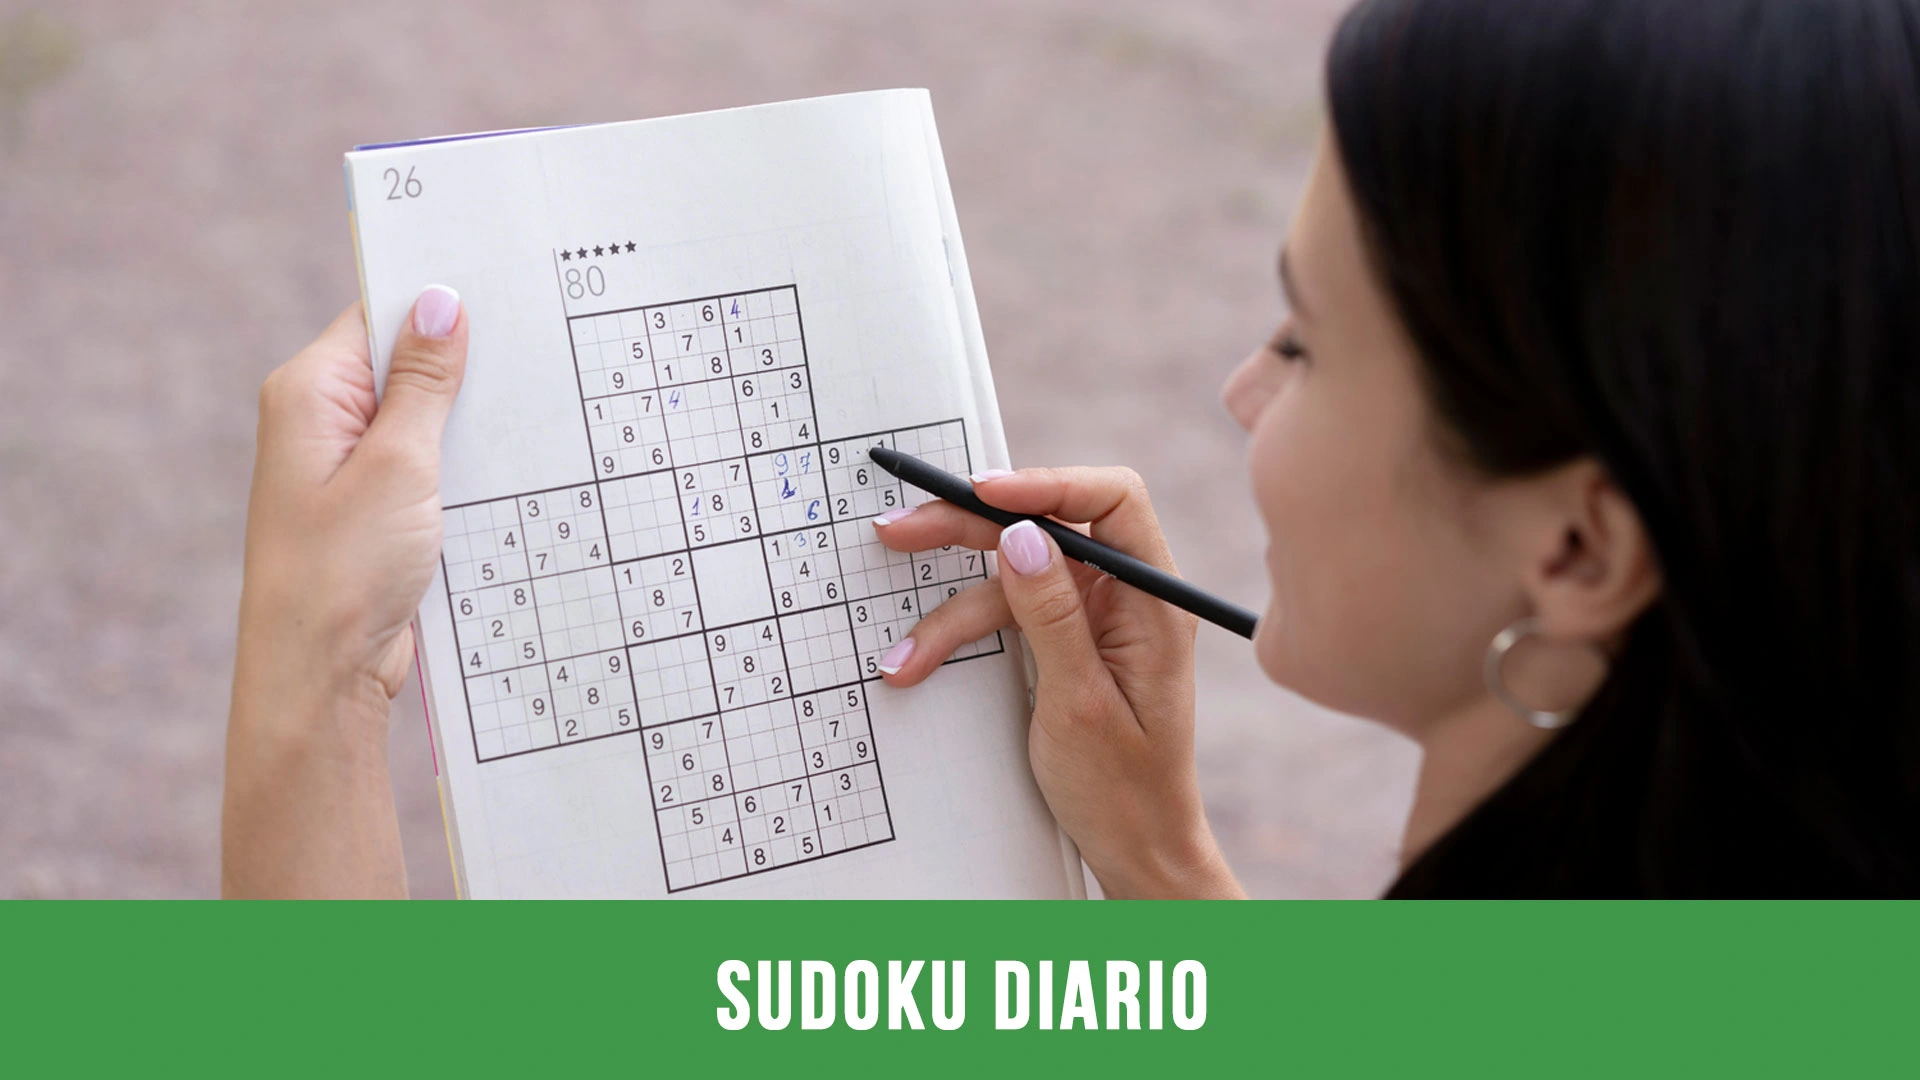 Sudoku diario